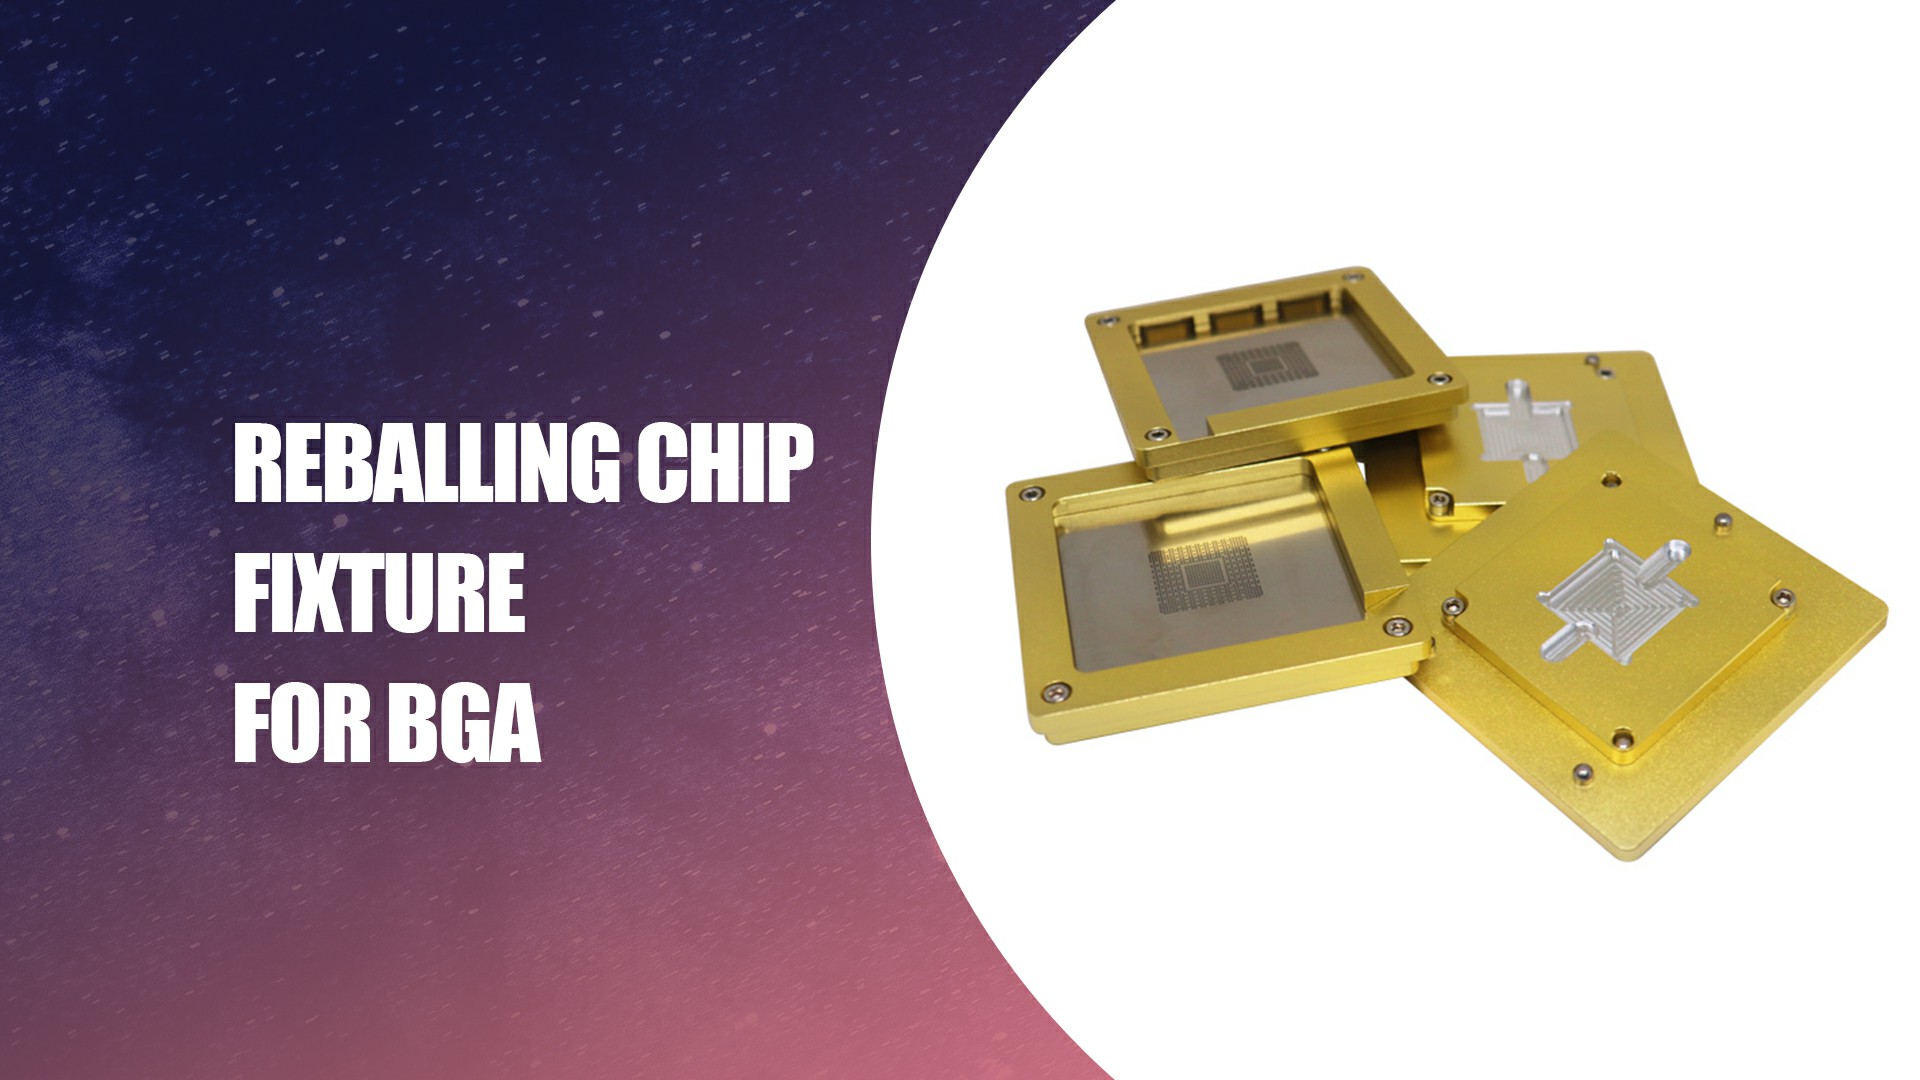 Lịch thi đấu chip reballing tốt nhất cho Công ty BGA - Dataifeng